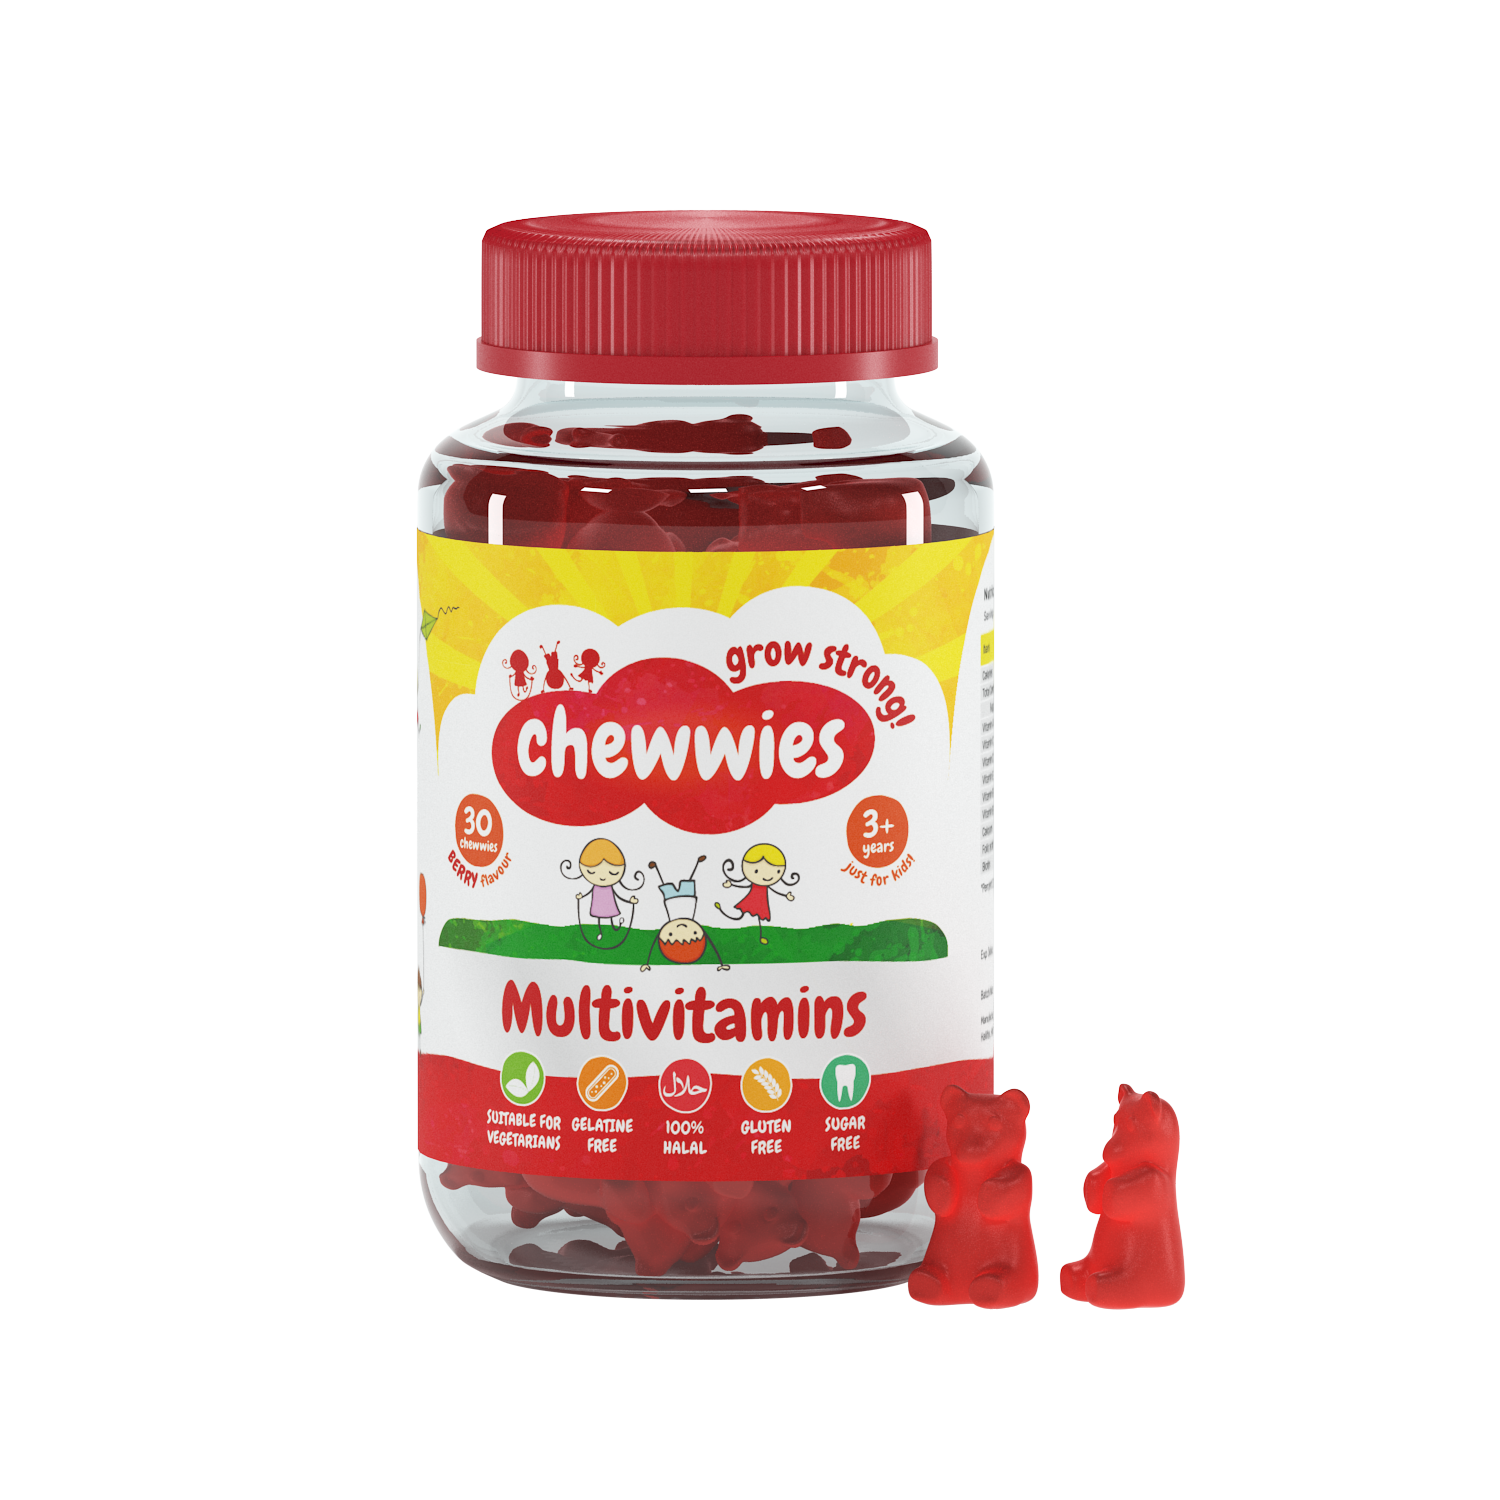 Chewwies Multivitamins offrent des vitamines essentielles dans des gommes végétaliennes, vitamines sans gélatine et sans sucre. Pour tous à partir de 3 ans.